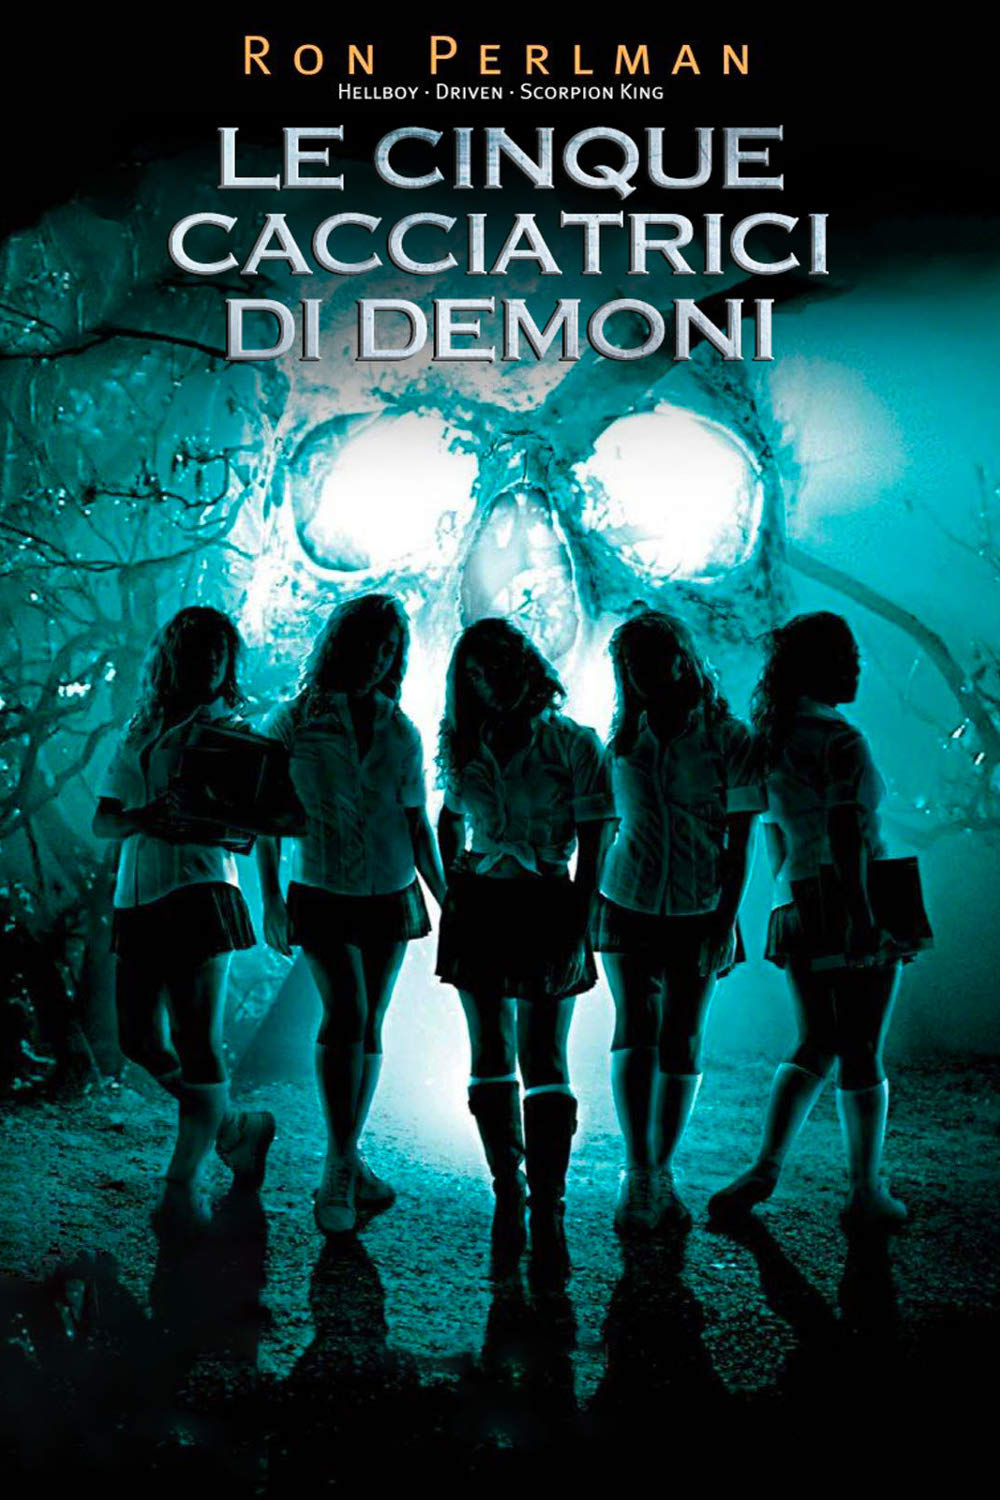 Le cinque cacciatrici di demoni (2006)